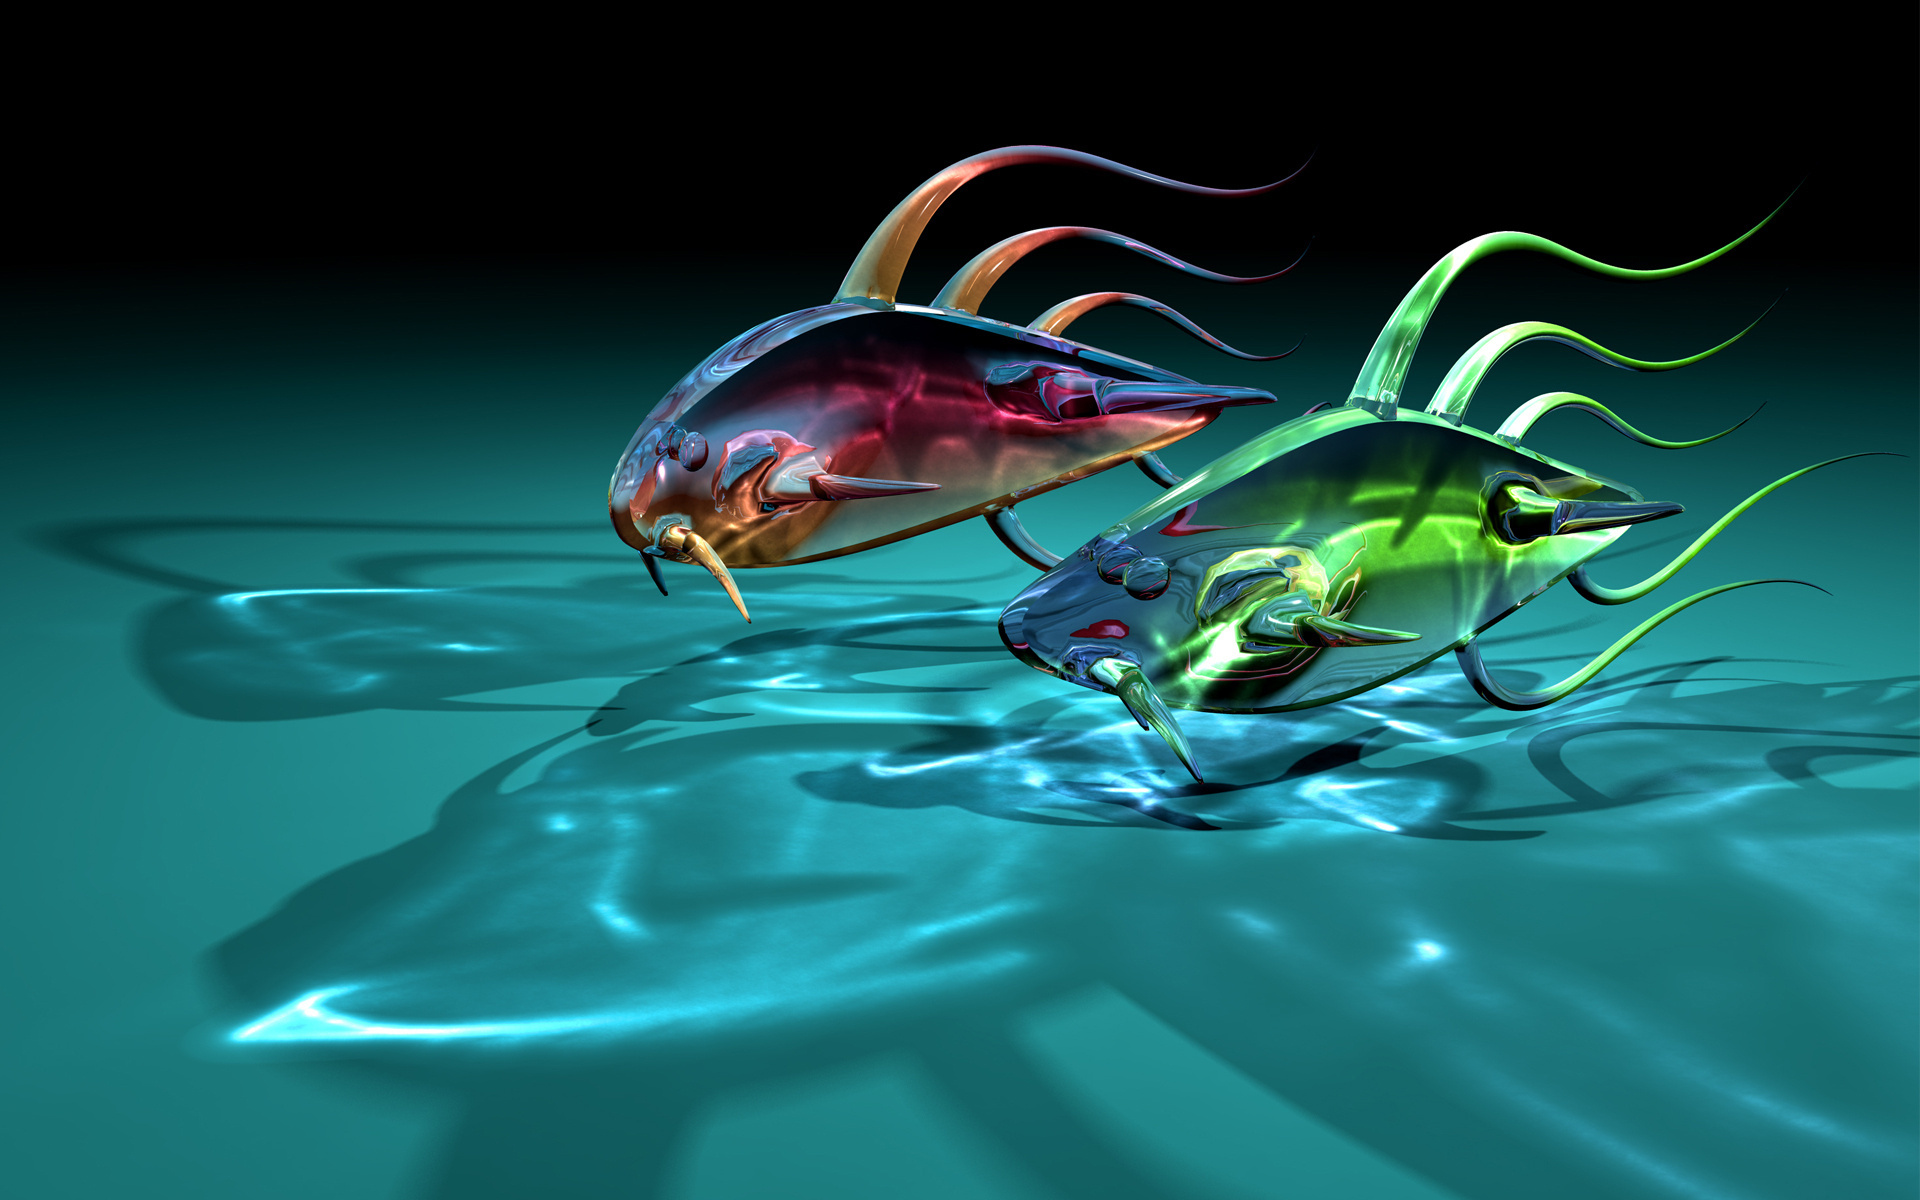 Fish 3D images